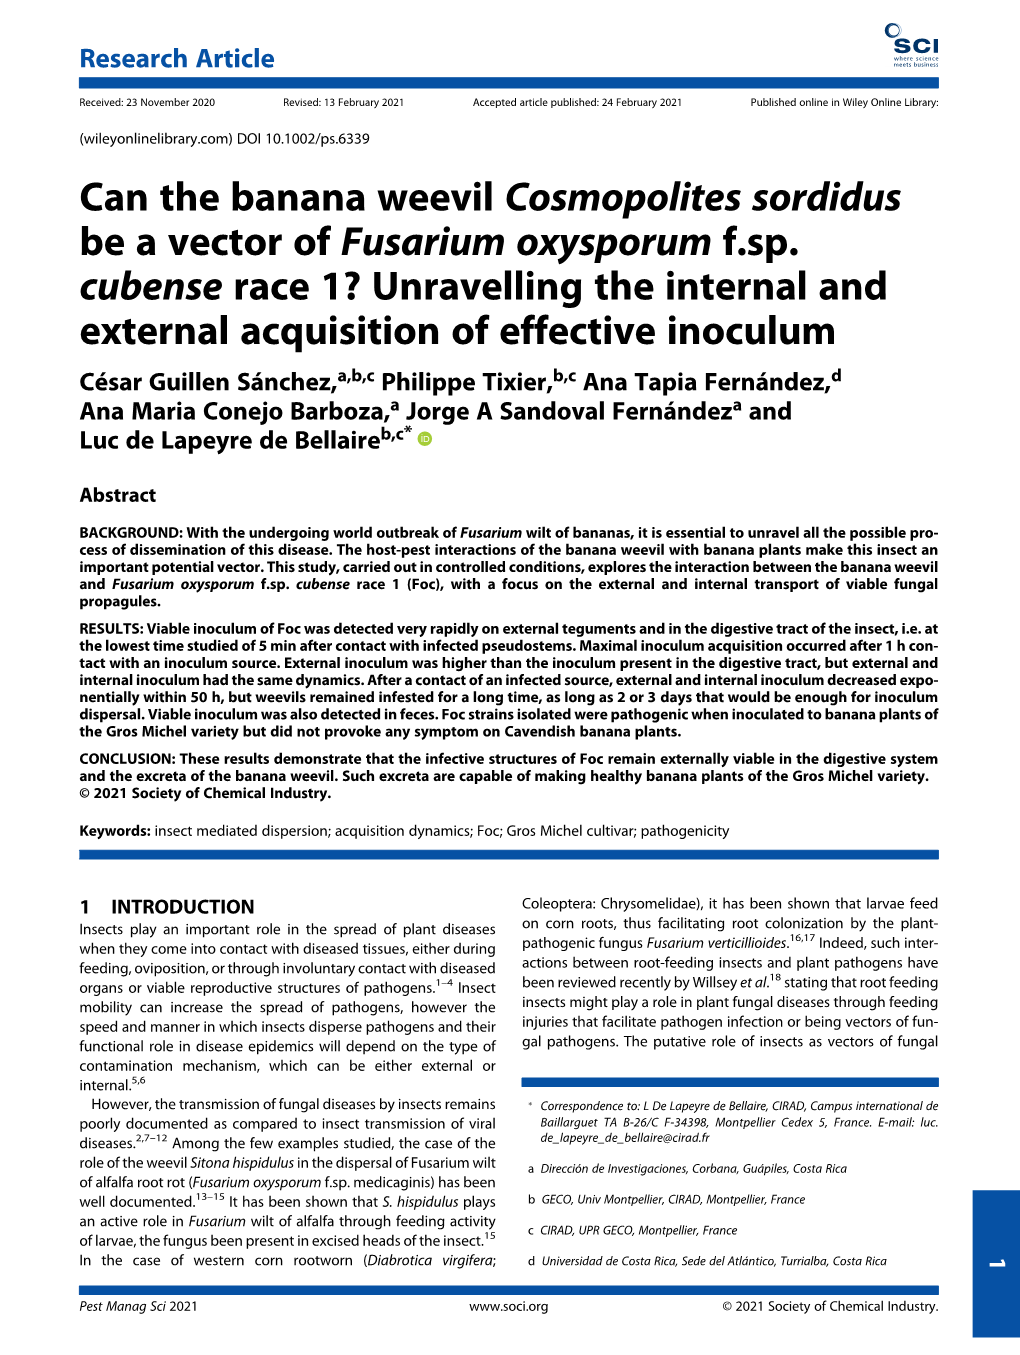 Can the Banana Weevil Cosmopolites Sordidus Be a Vector of Fusarium Oxysporum F.Sp